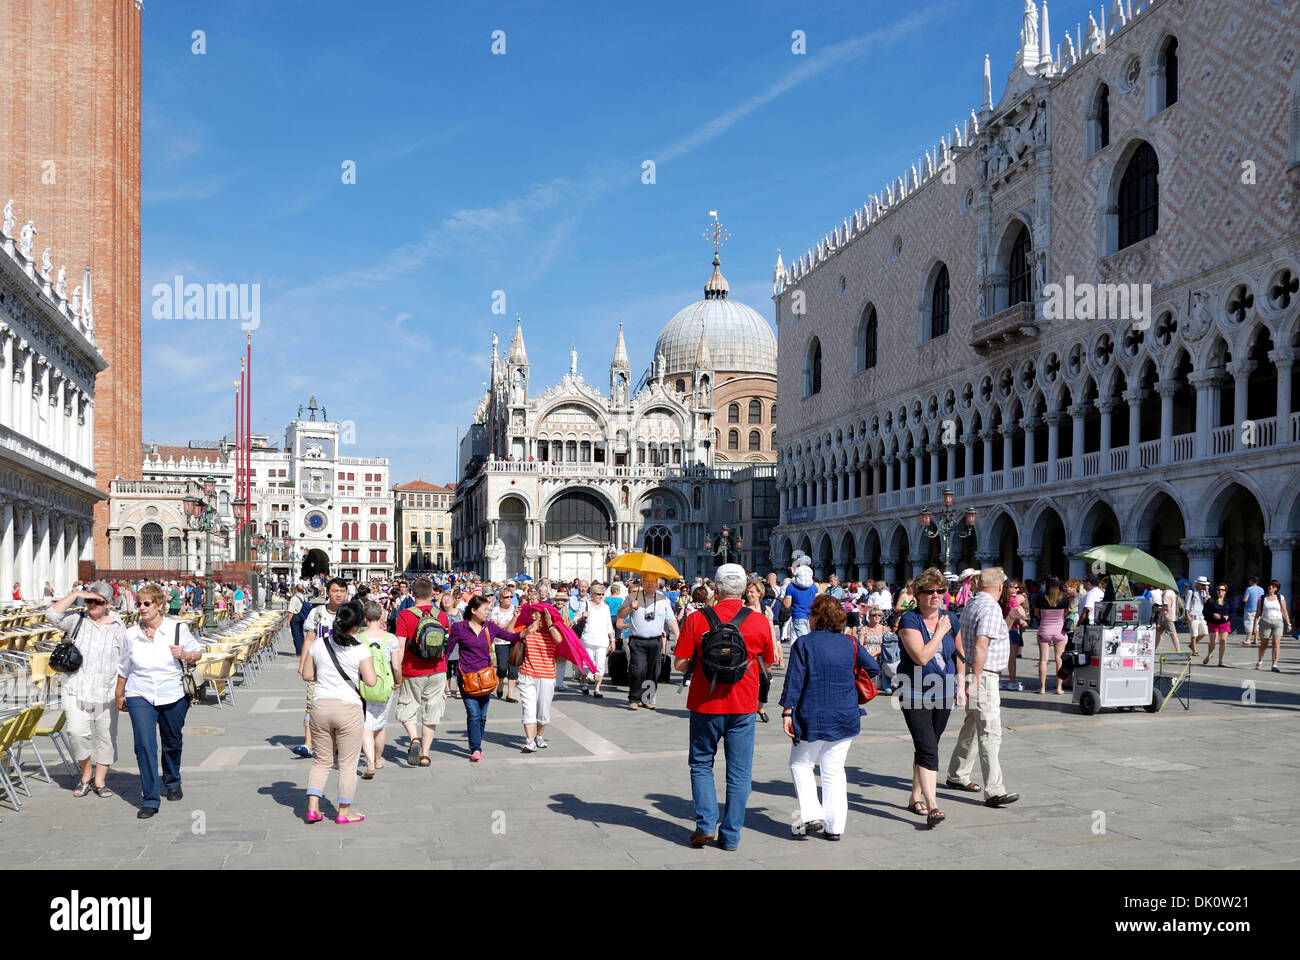 St Mark's Square in Venice. Stock Photo